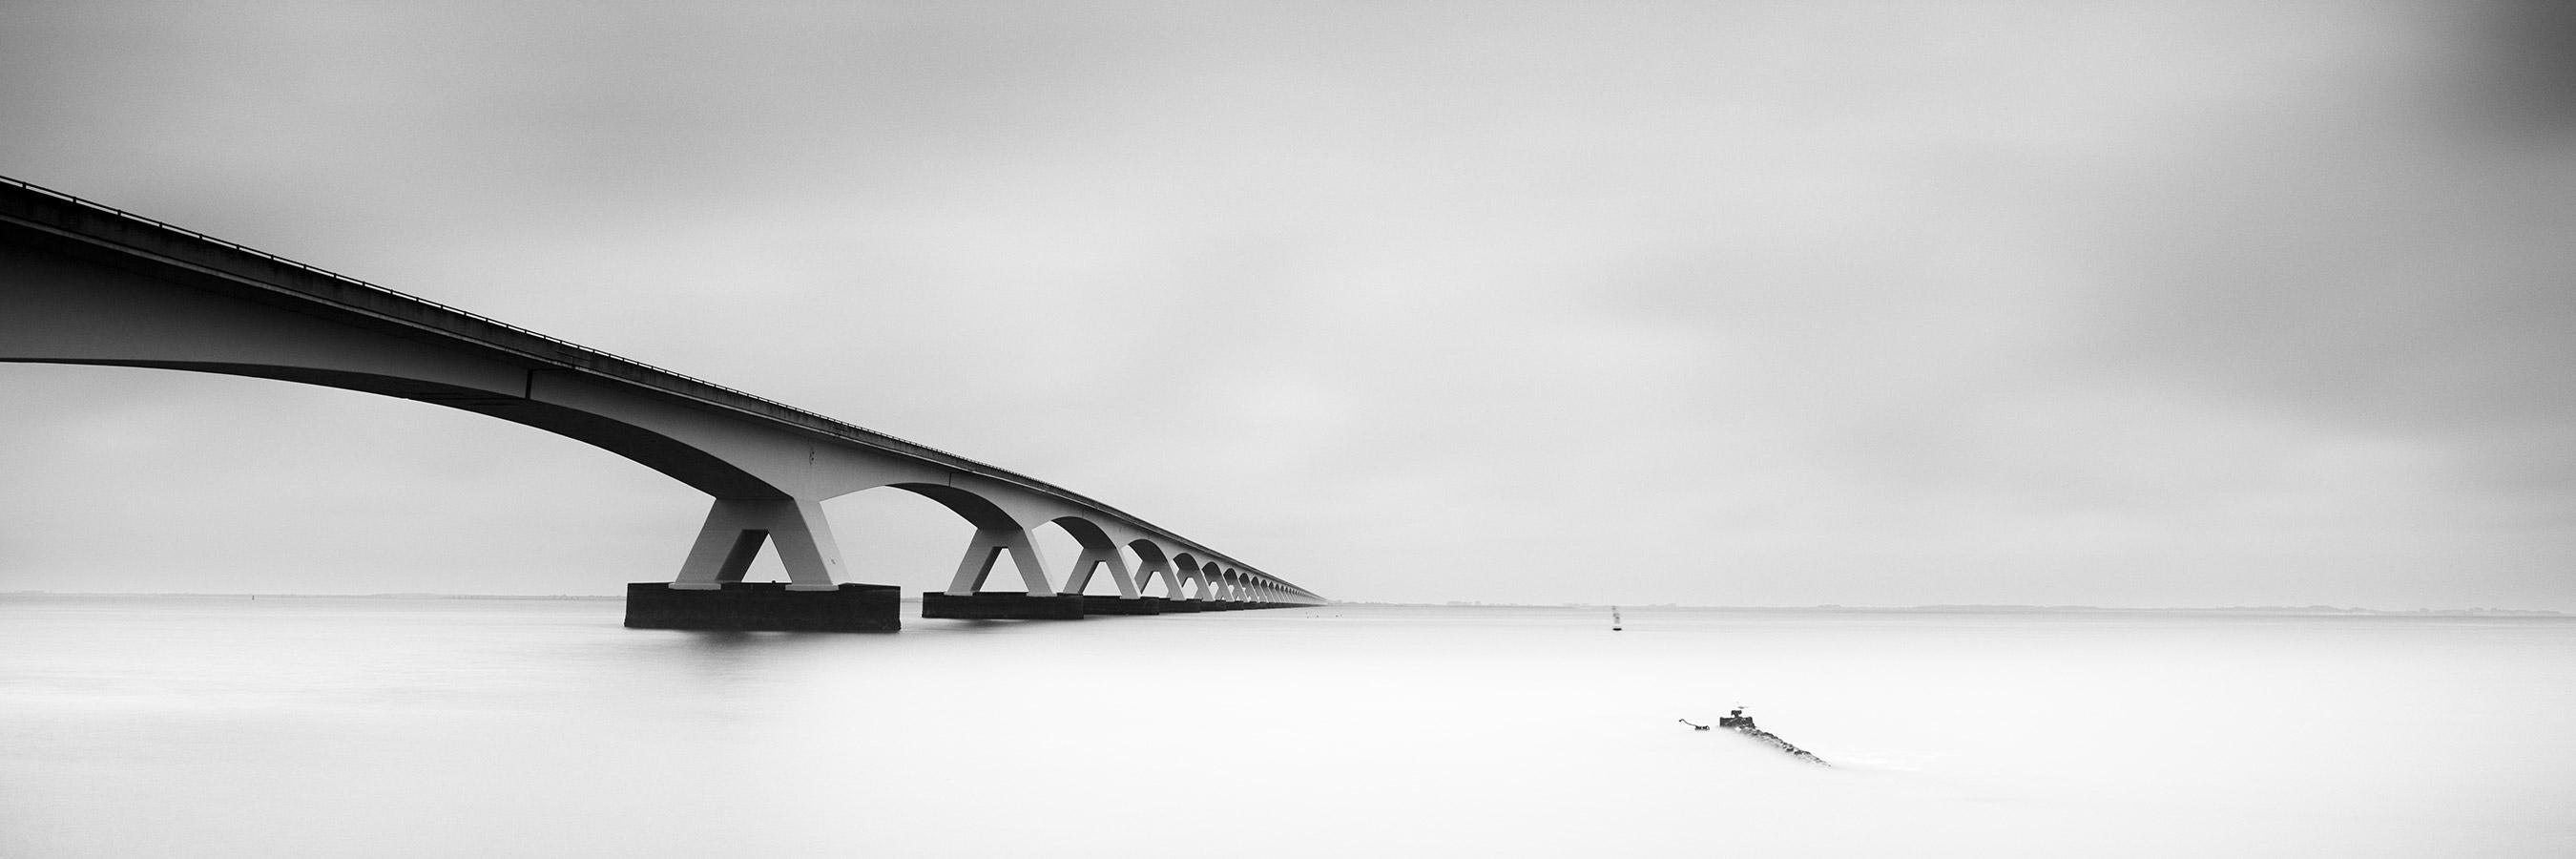 Landscape Photograph Gerald Berghammer - Panorama du pont de Zélande, Pays-Bas, photographies de paysages aquatiques en noir et blanc